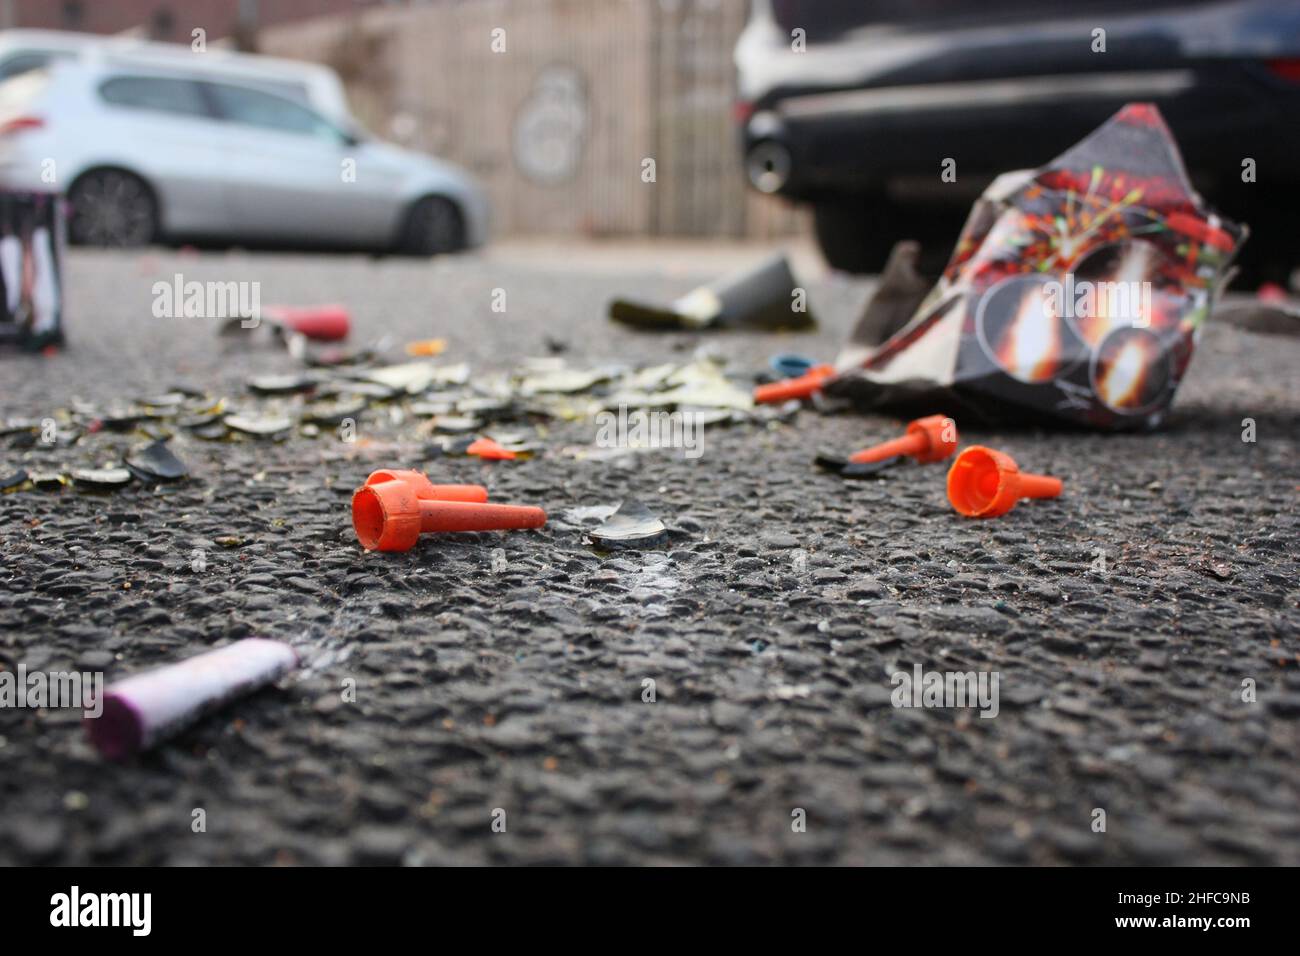 Déchets de plastique et verre brisé dans la rue après les célébrations du nouvel an en Allemagne Banque D'Images